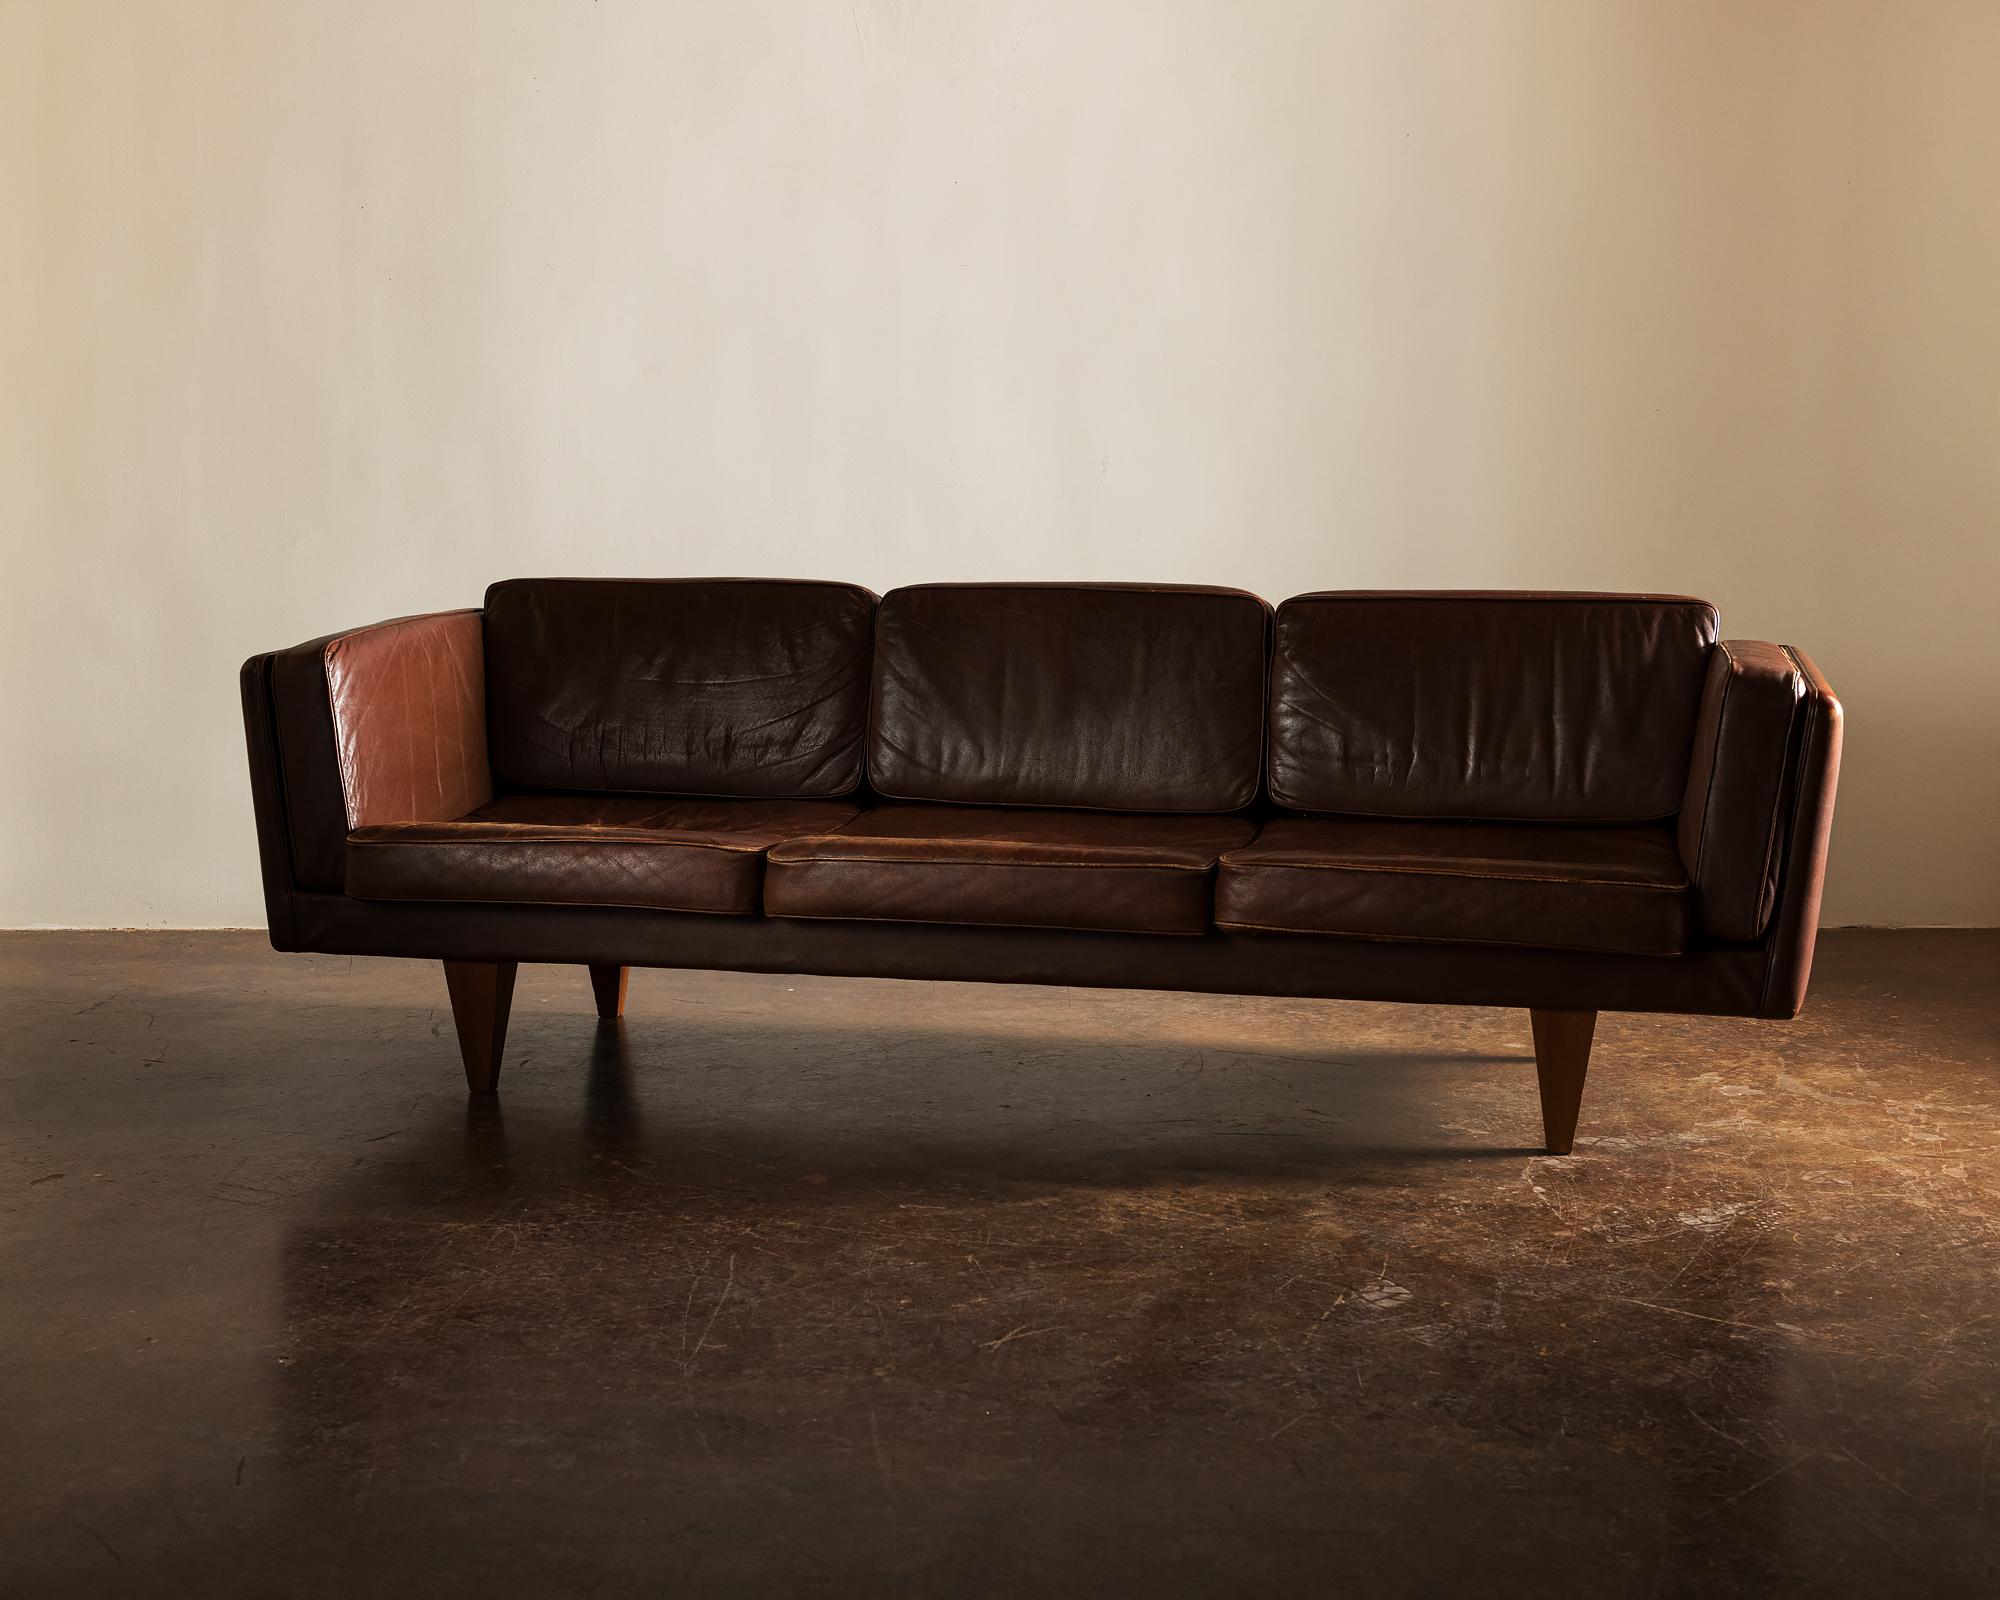 Mid-20th Century Illum Wikkelsø Sofa V11 in Brown Leather for Holger Christiansen, Denmark, 1960s